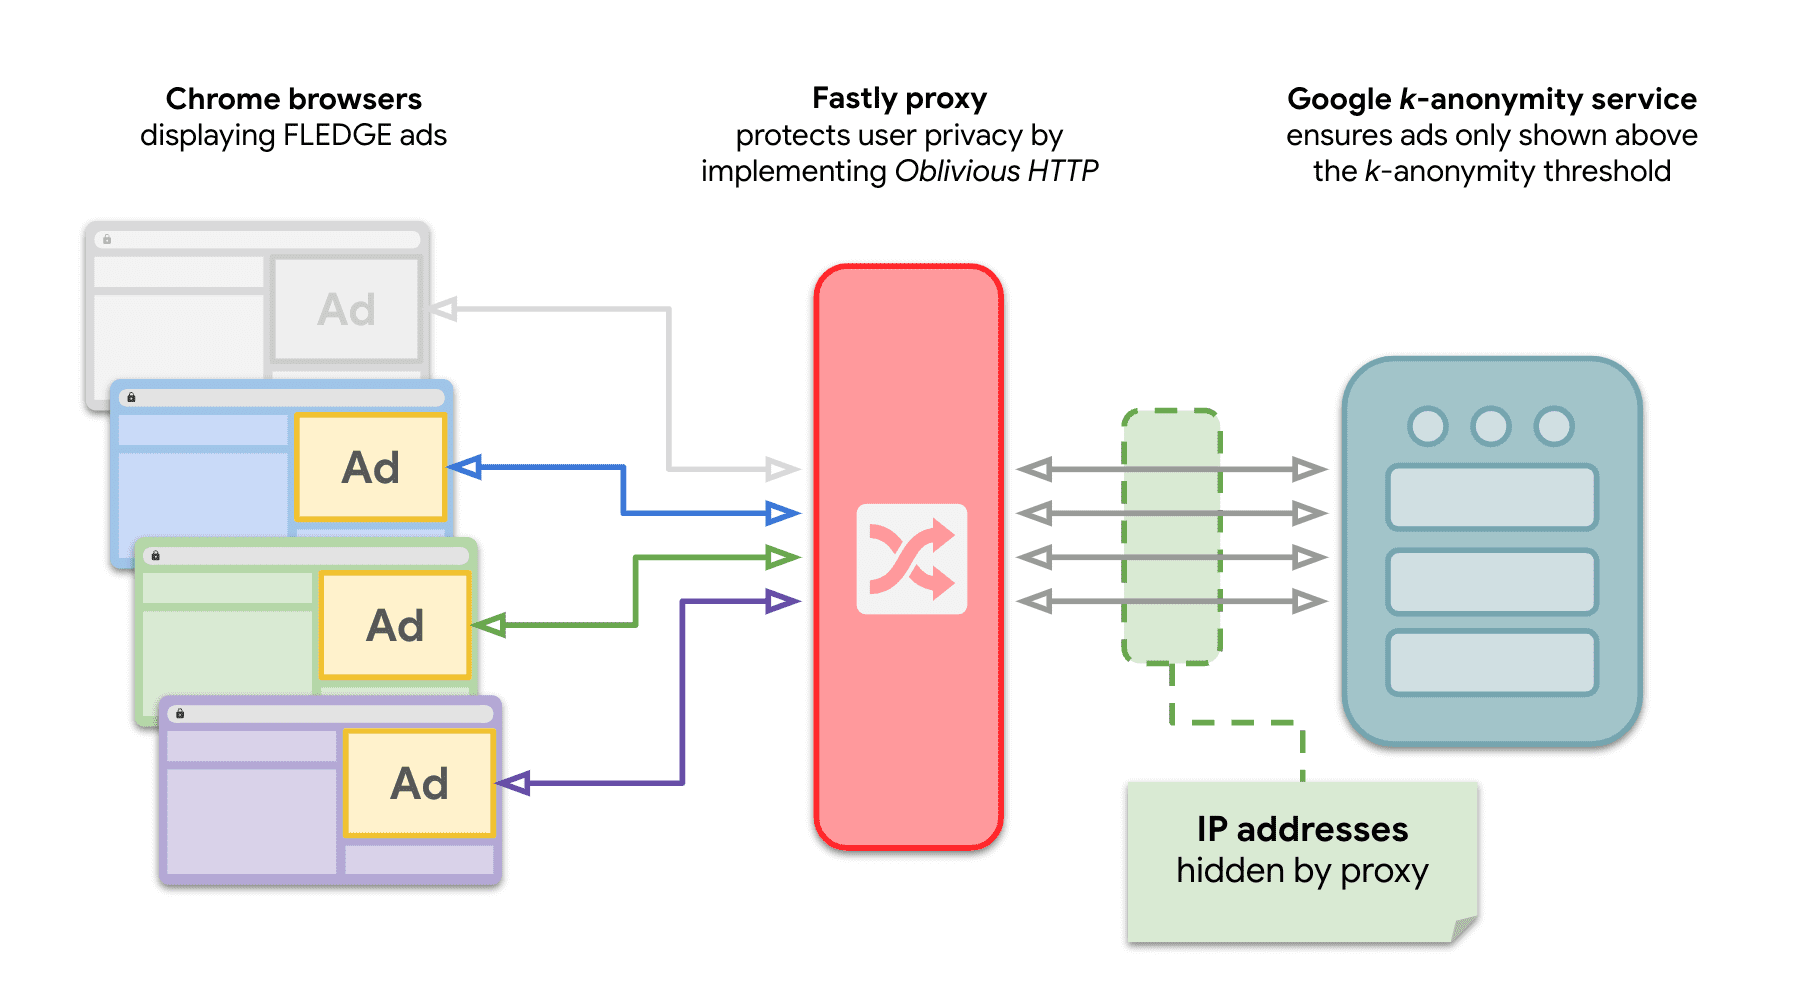 Een diagram dat laat zien dat meerdere sites in Chrome verzoeken naar de 𝑘-anonimiteitsserver sturen om FLEDGE-advertenties weer te geven met de OHTTP-relay ertussenin.